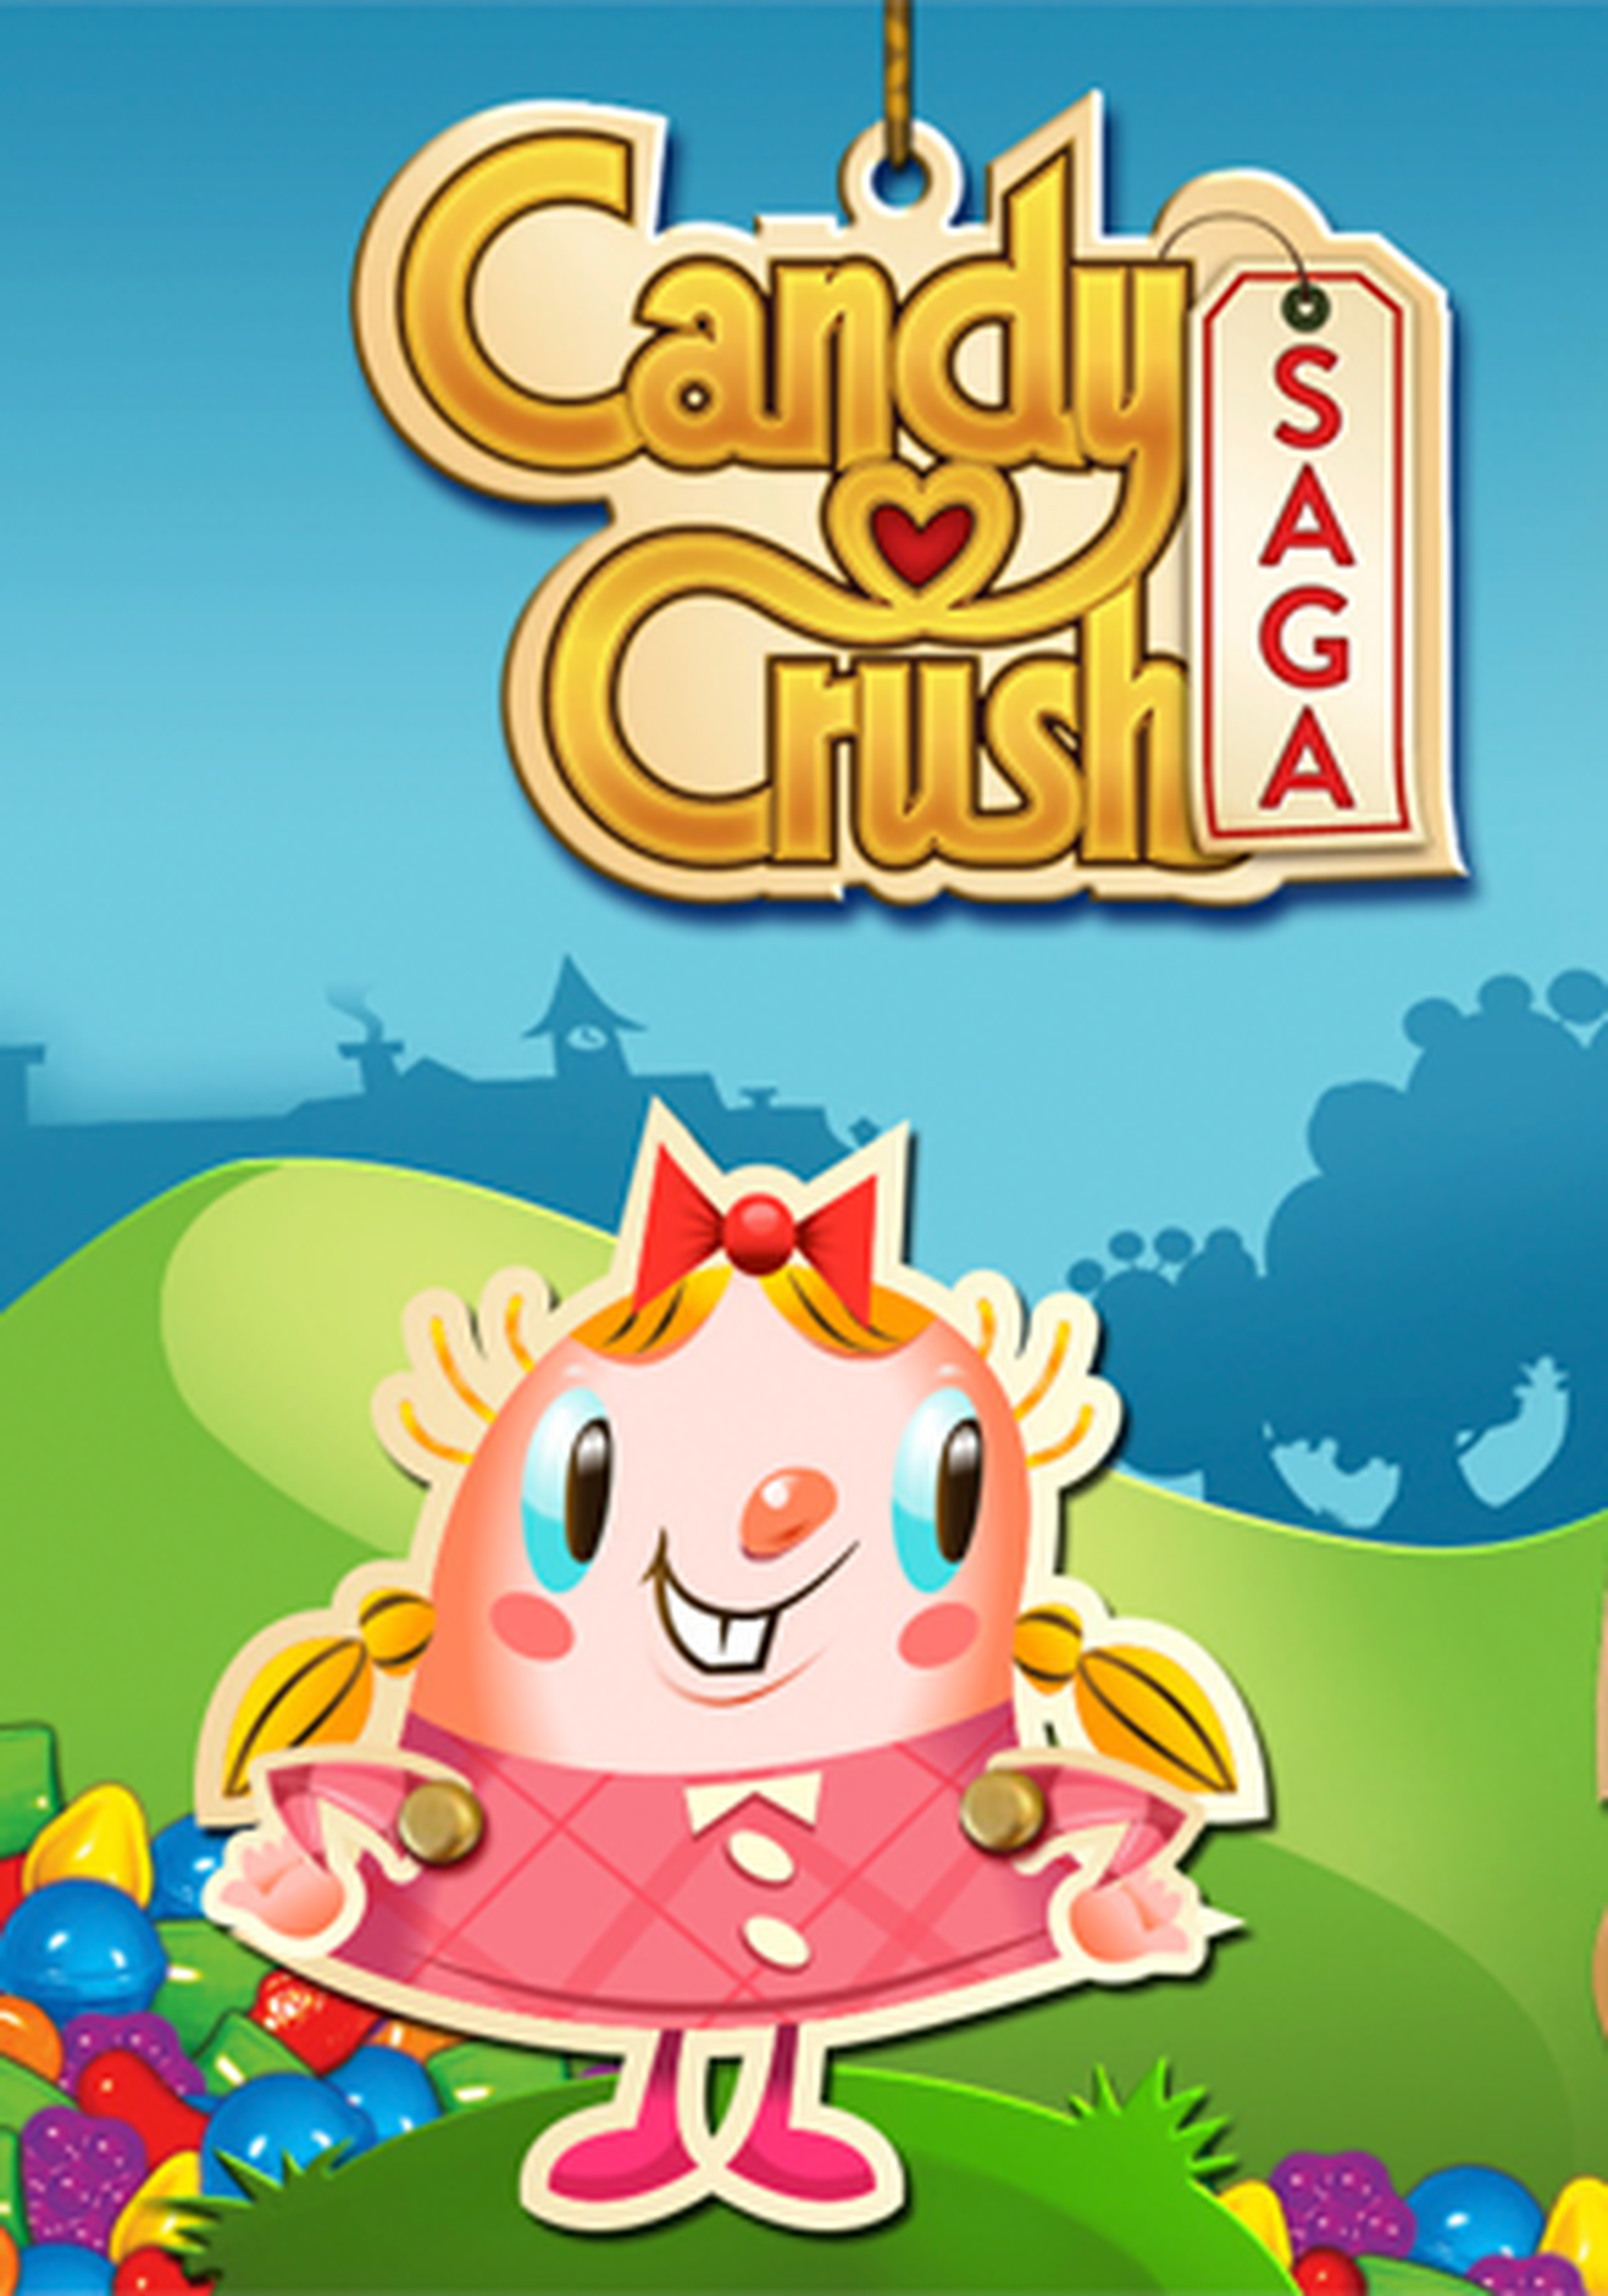 Candy Crush Saga Caratula